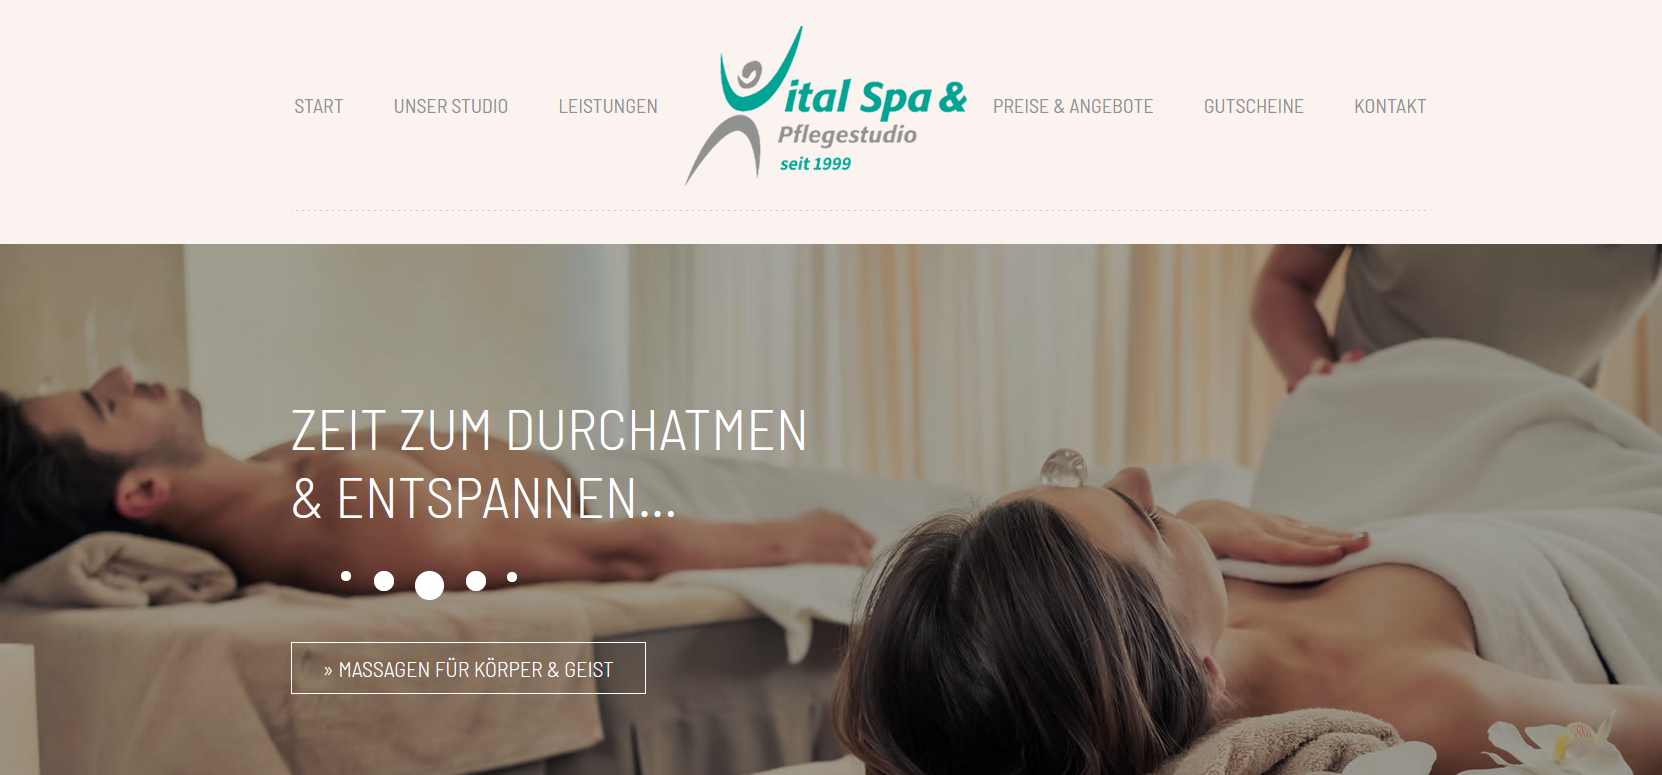 Webdesign Bautzen - Referenz Kosmetik und Pflegestudio